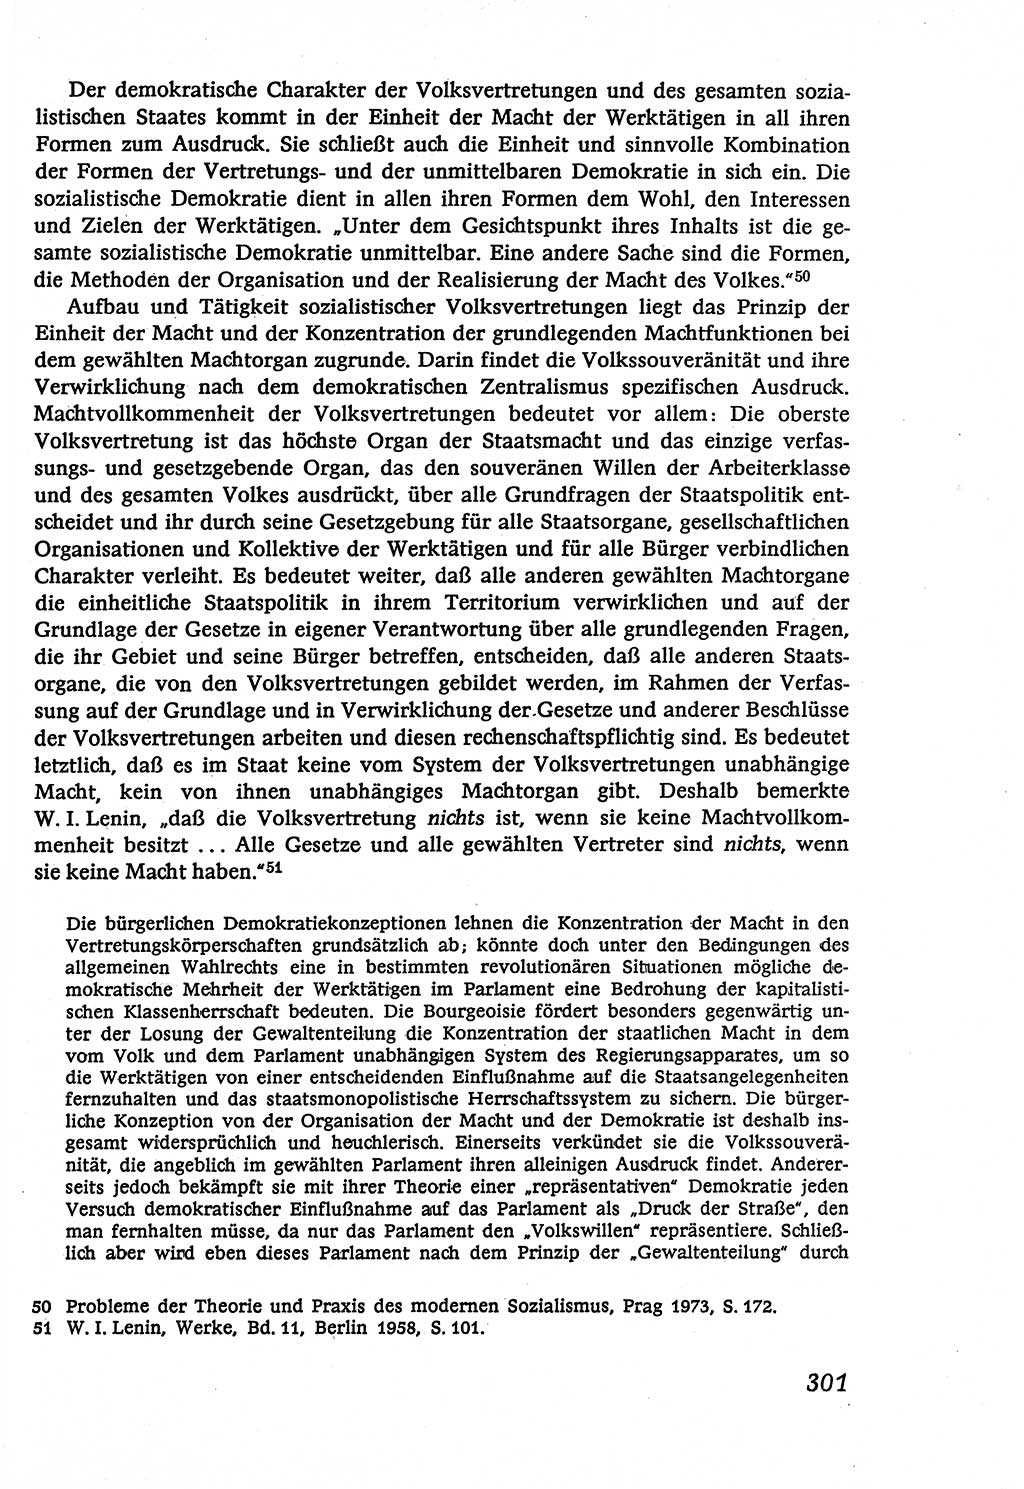 Marxistisch-leninistische (ML) Staats- und Rechtstheorie [Deutsche Demokratische Republik (DDR)], Lehrbuch 1980, Seite 301 (ML St.-R.-Th. DDR Lb. 1980, S. 301)